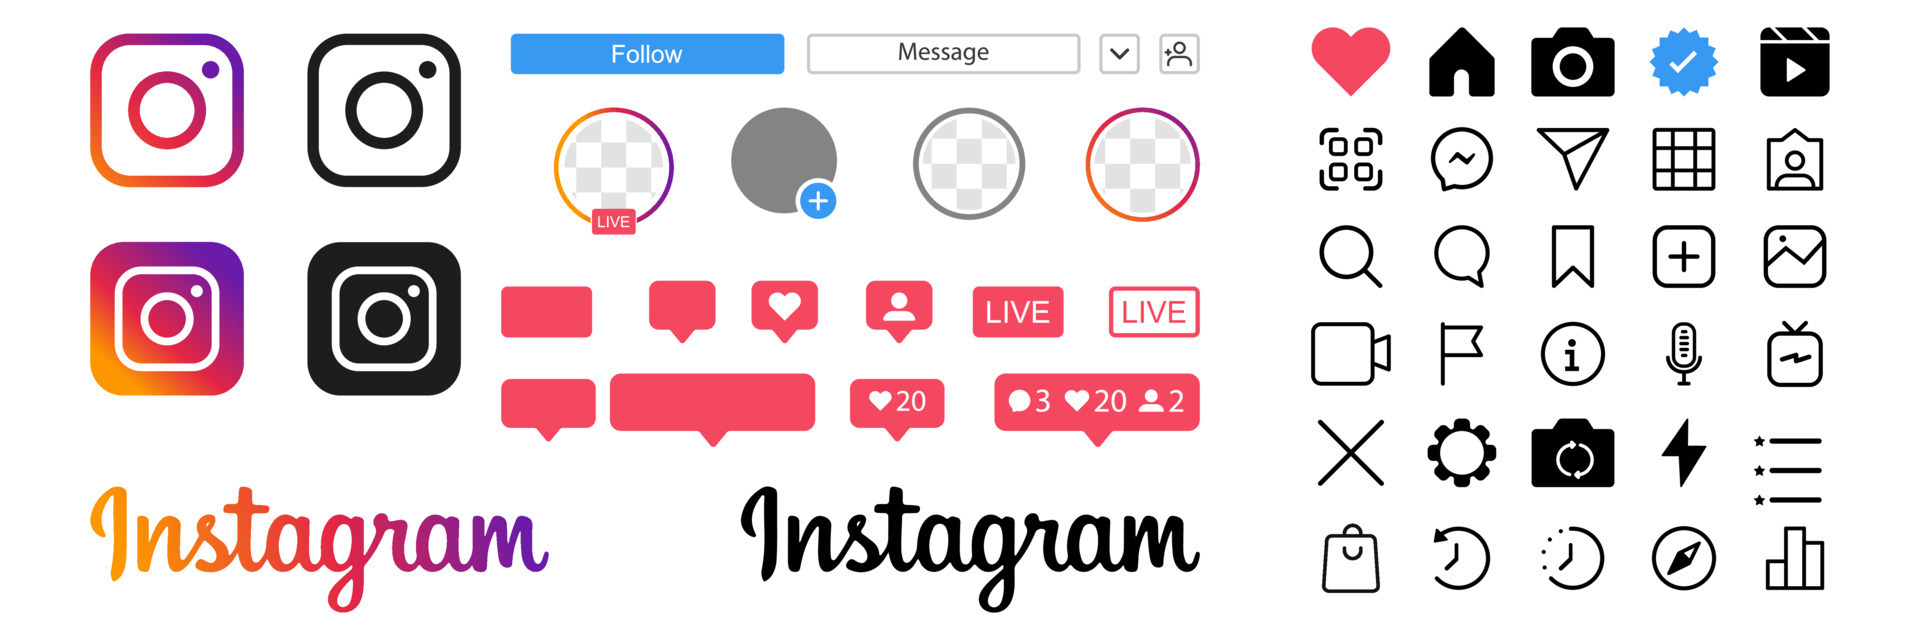 Bộ biểu tượng giao diện người dùng Instagram được cập nhật mới nhất năm 2024 đầy màu sắc và hấp dẫn. Khám phá ngay để trải nghiệm giao diện đẹp mắt, tiện dụng và tối ưu hơn cho trải nghiệm Instagram của bạn.